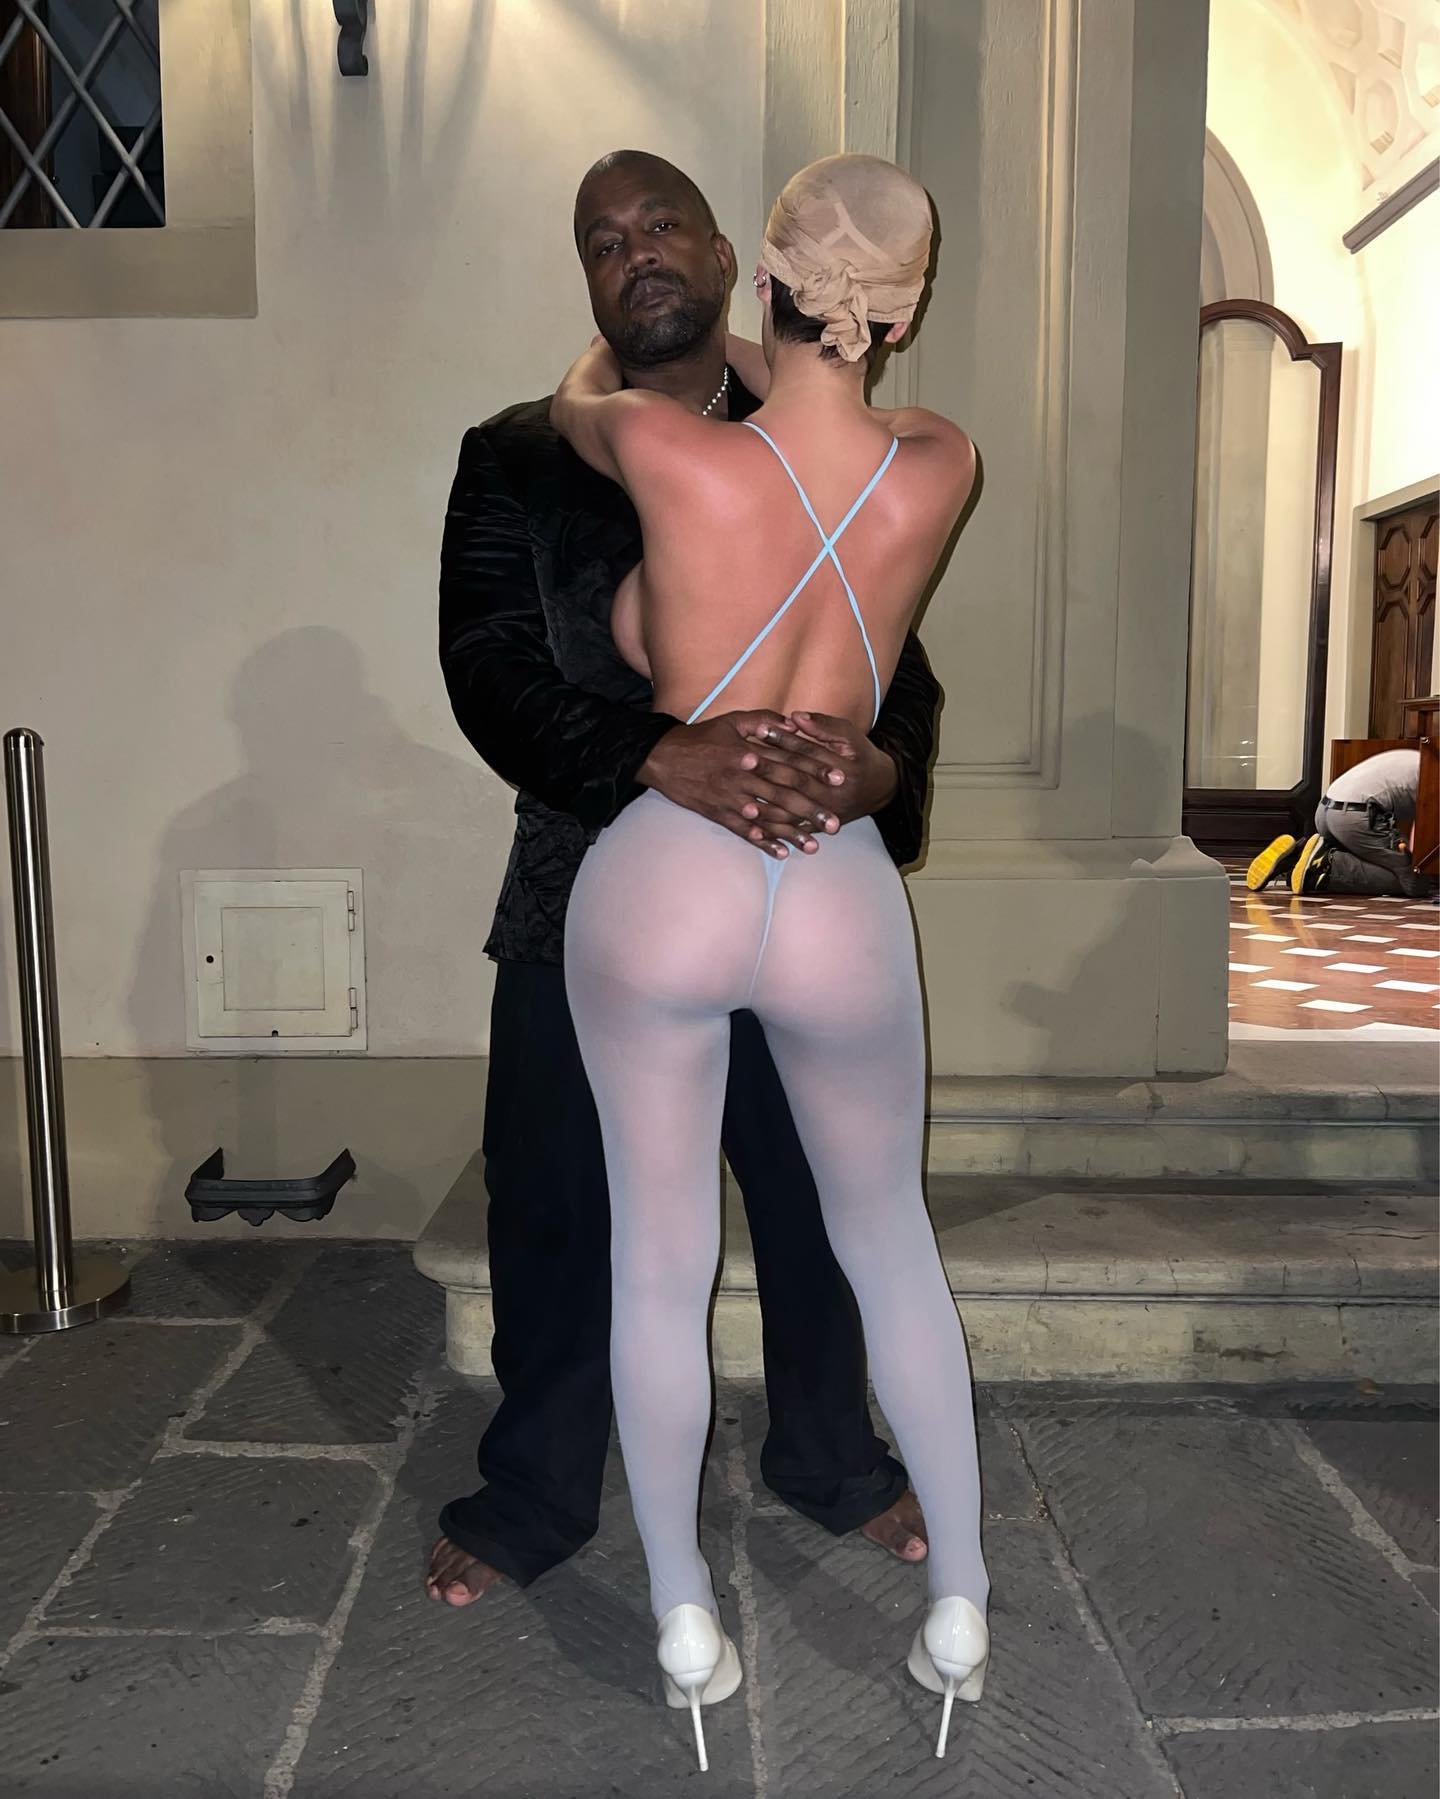 Kanye (hier im August mit Bianca zu sehen) hat damit begonnen, provokantere Bilder seiner Frau zu veröffentlichen